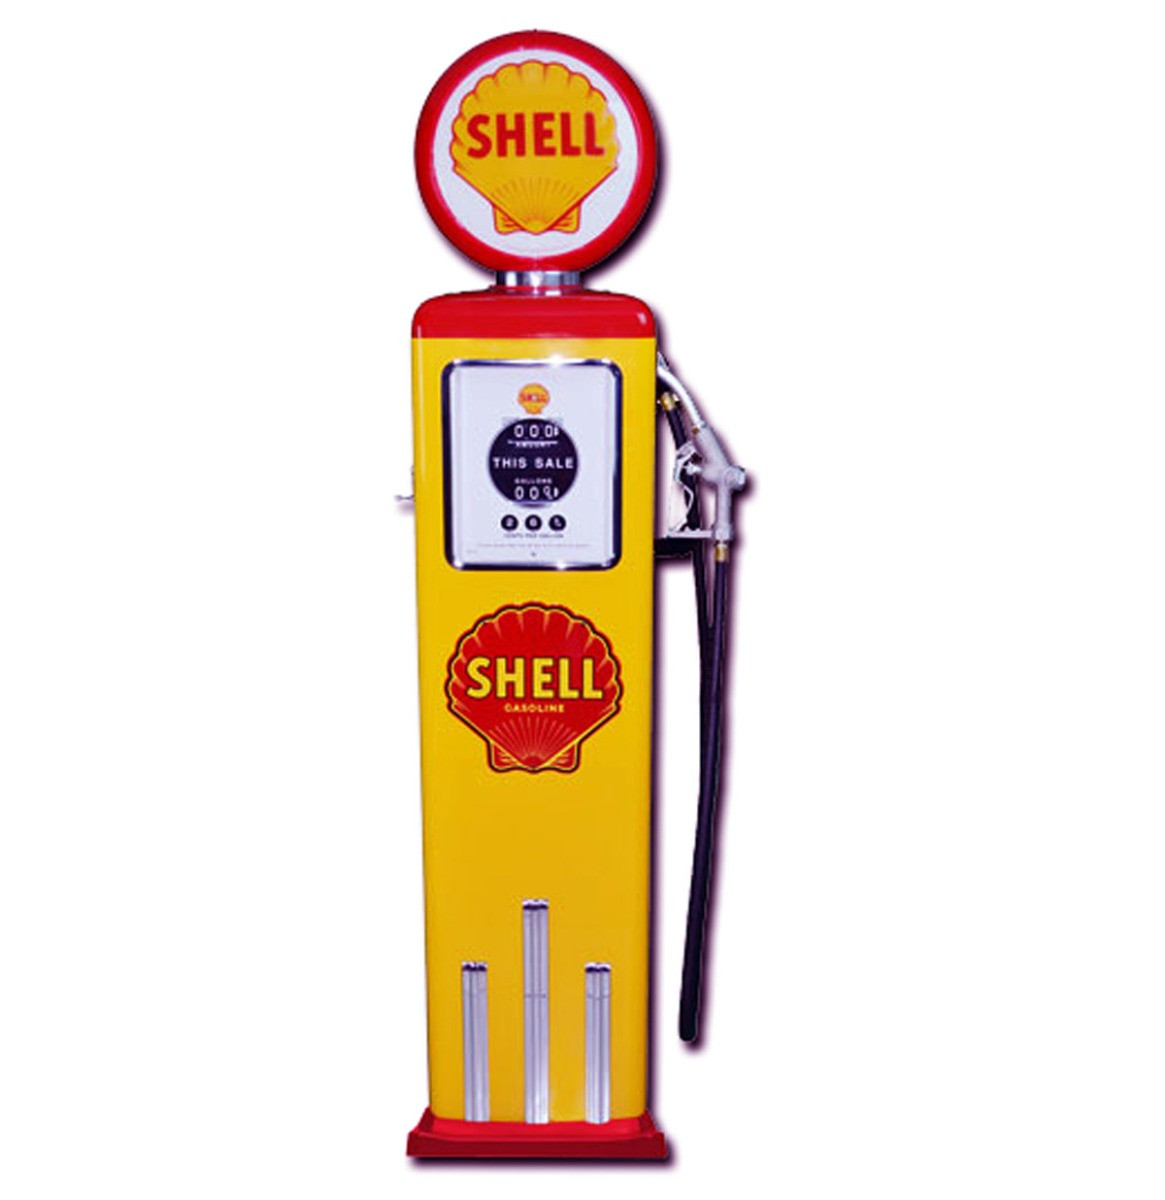 Shell 8 Ball Benzinepomp Met Voet Rood & Geel Reproductie